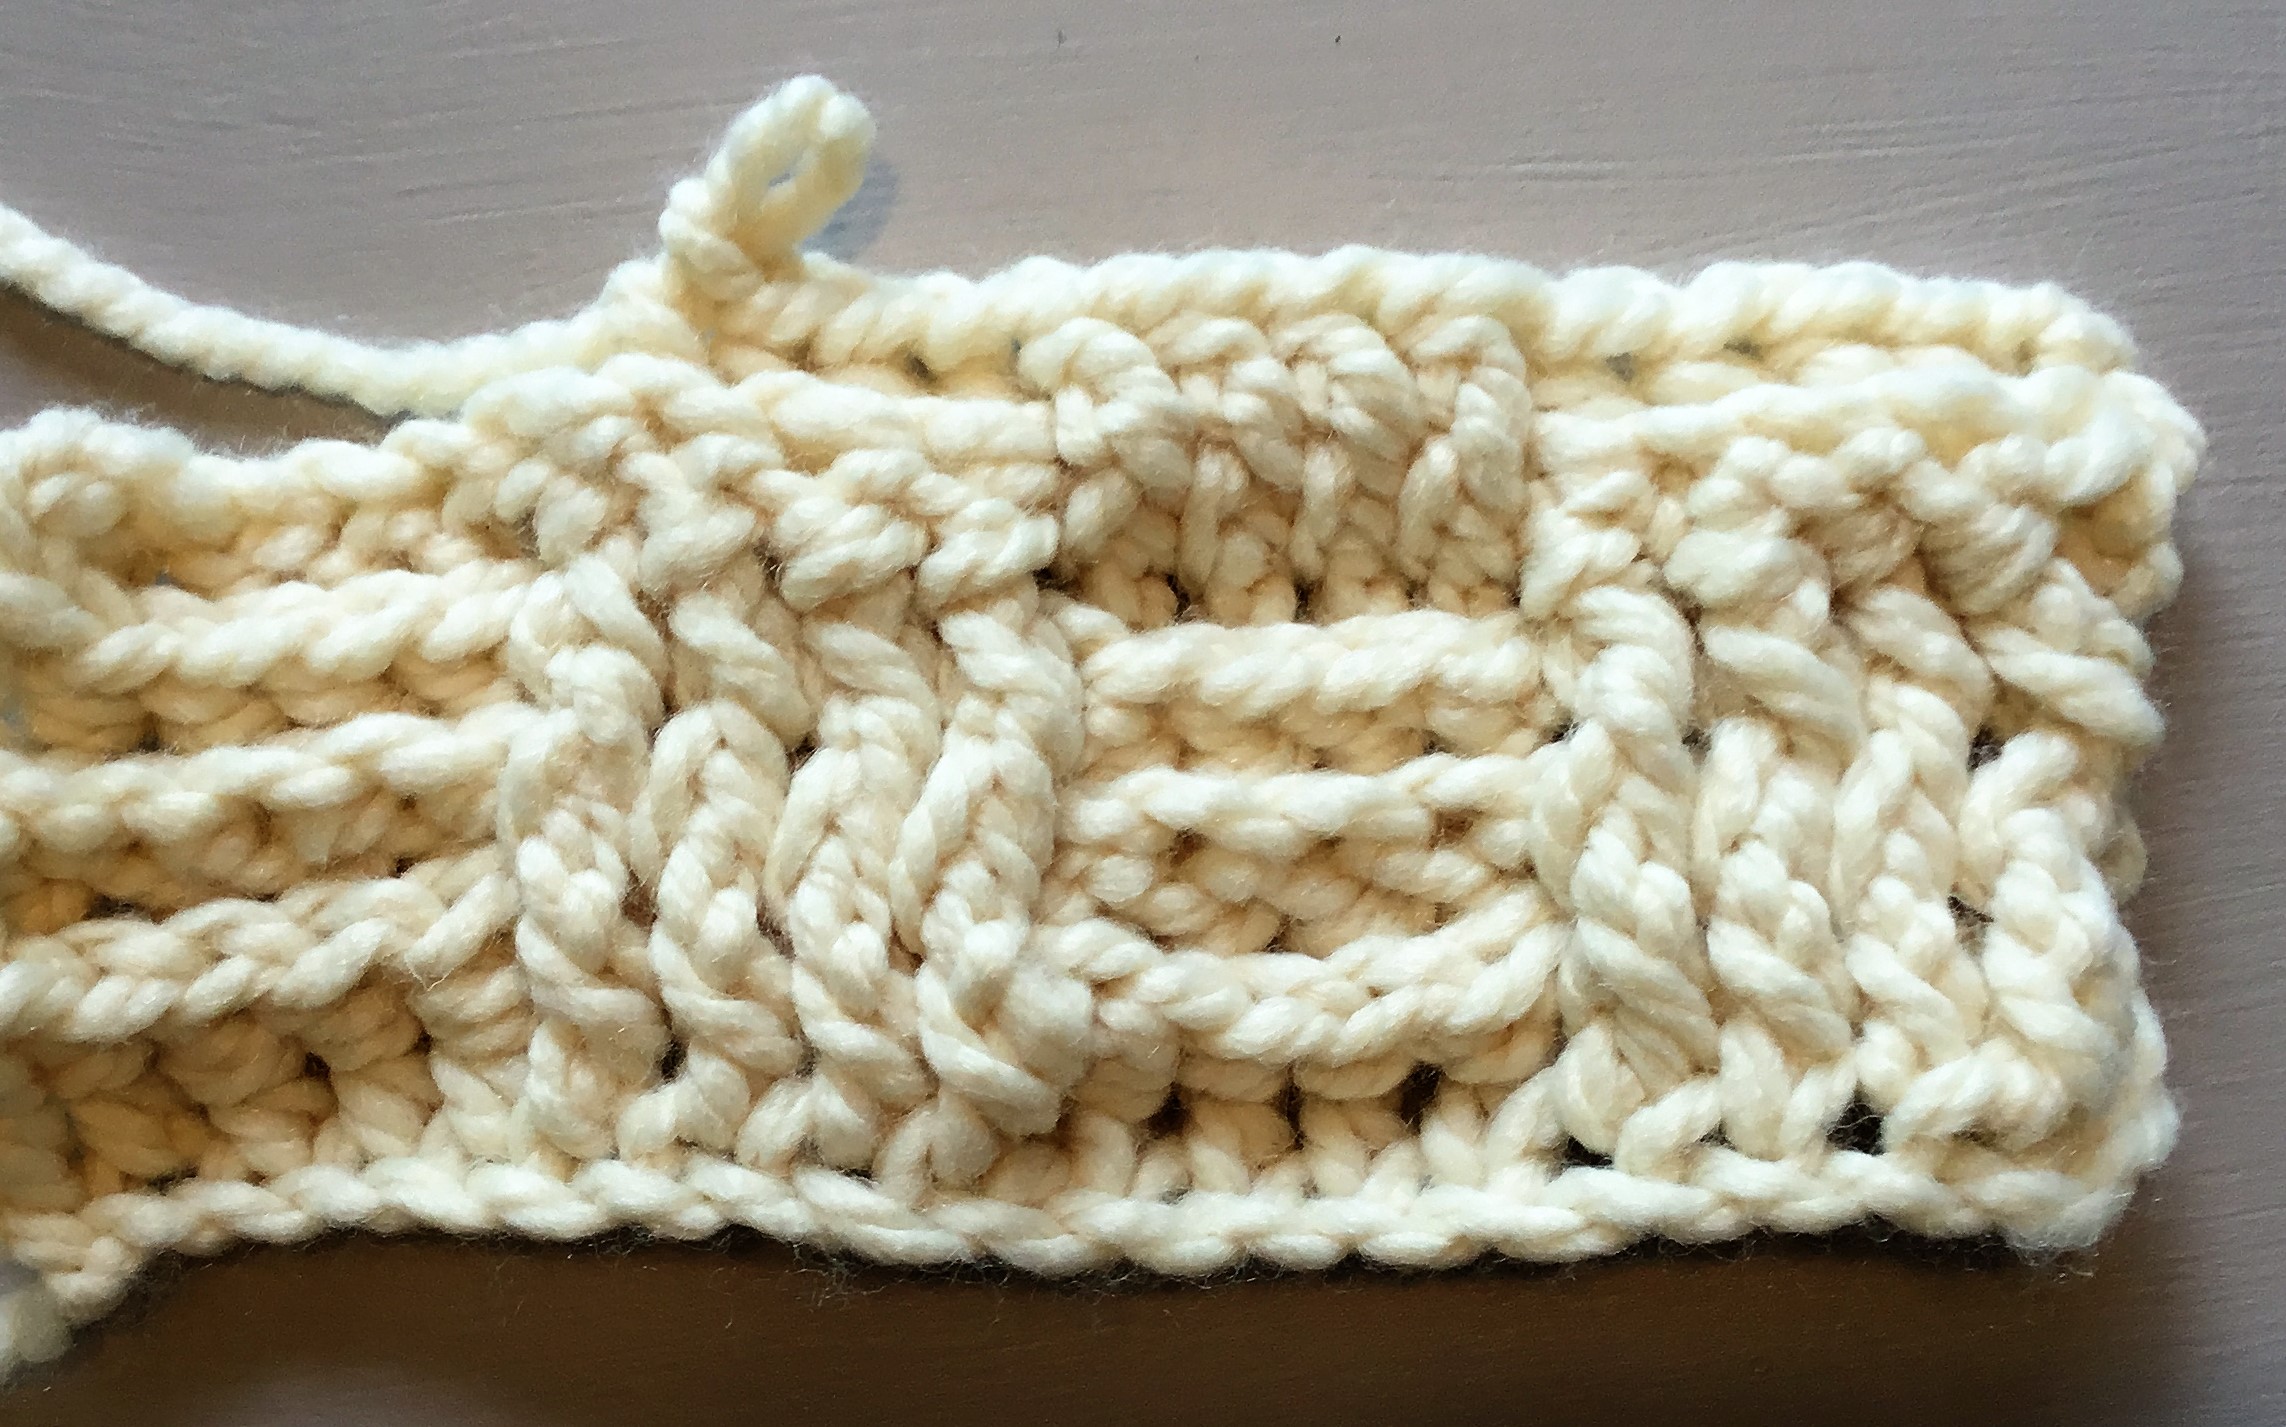 Basket Weave Crochet Pillow - Crazy Cool Crochet